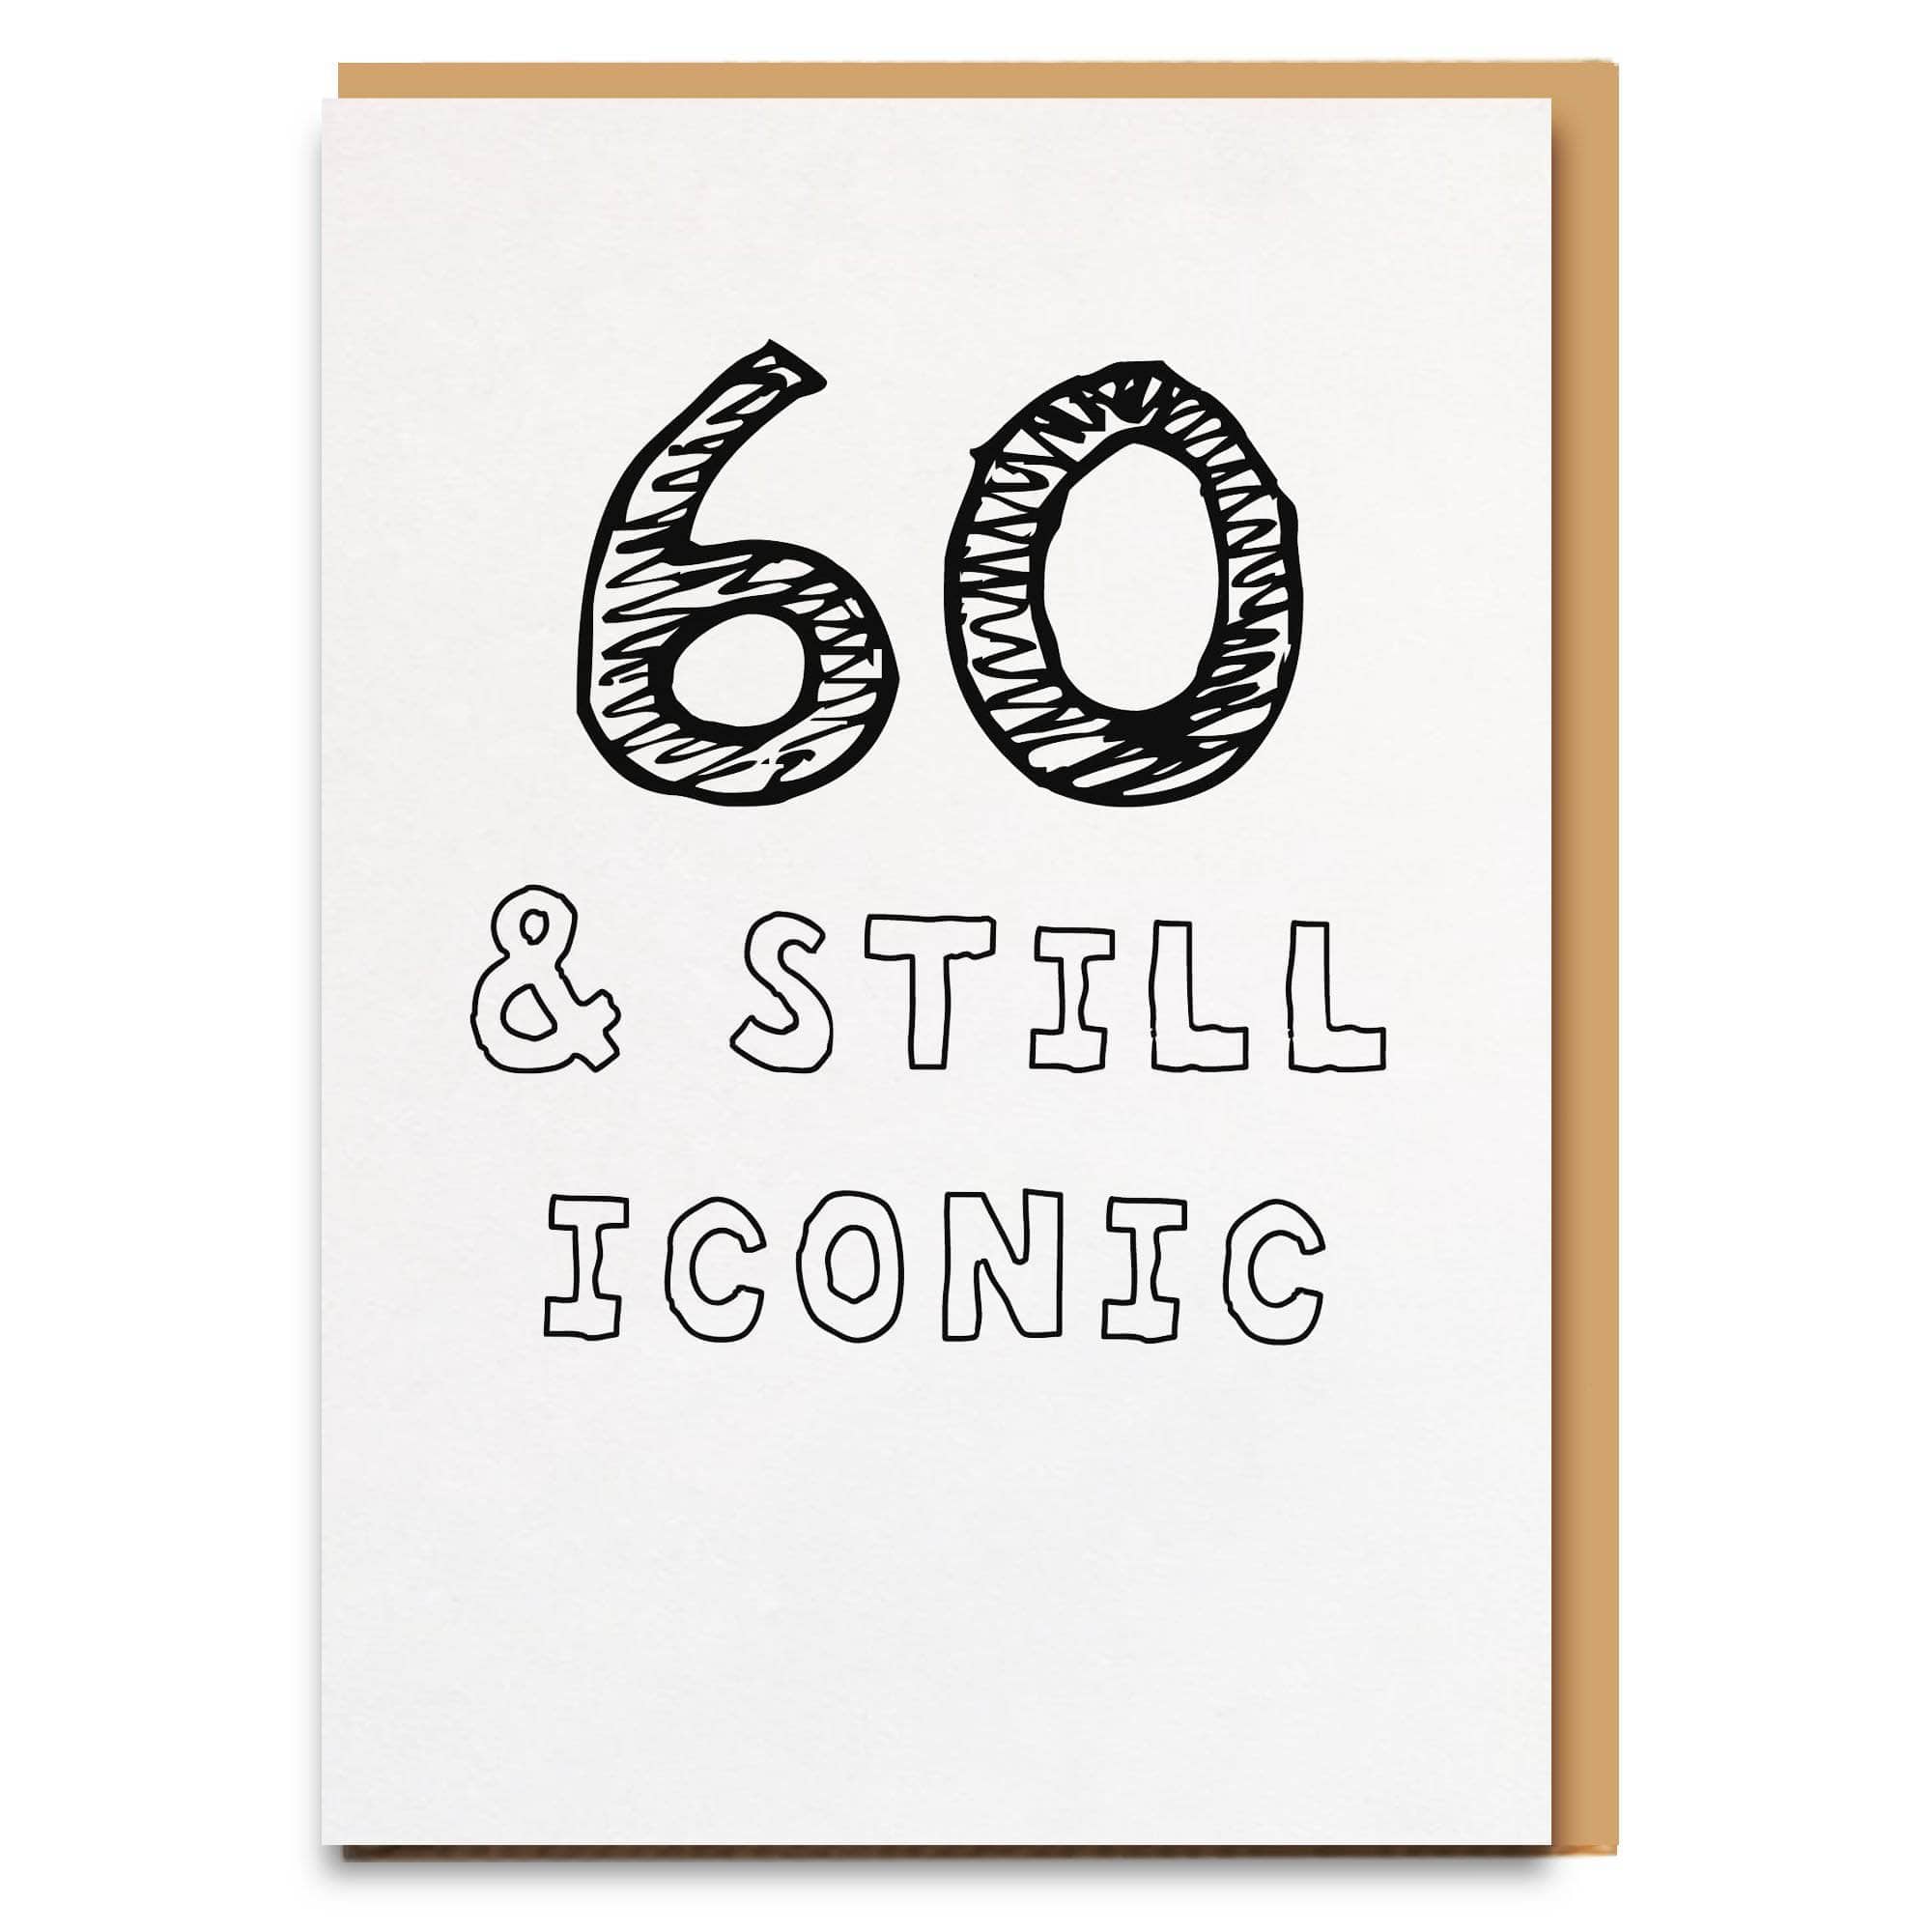 60 Iconic